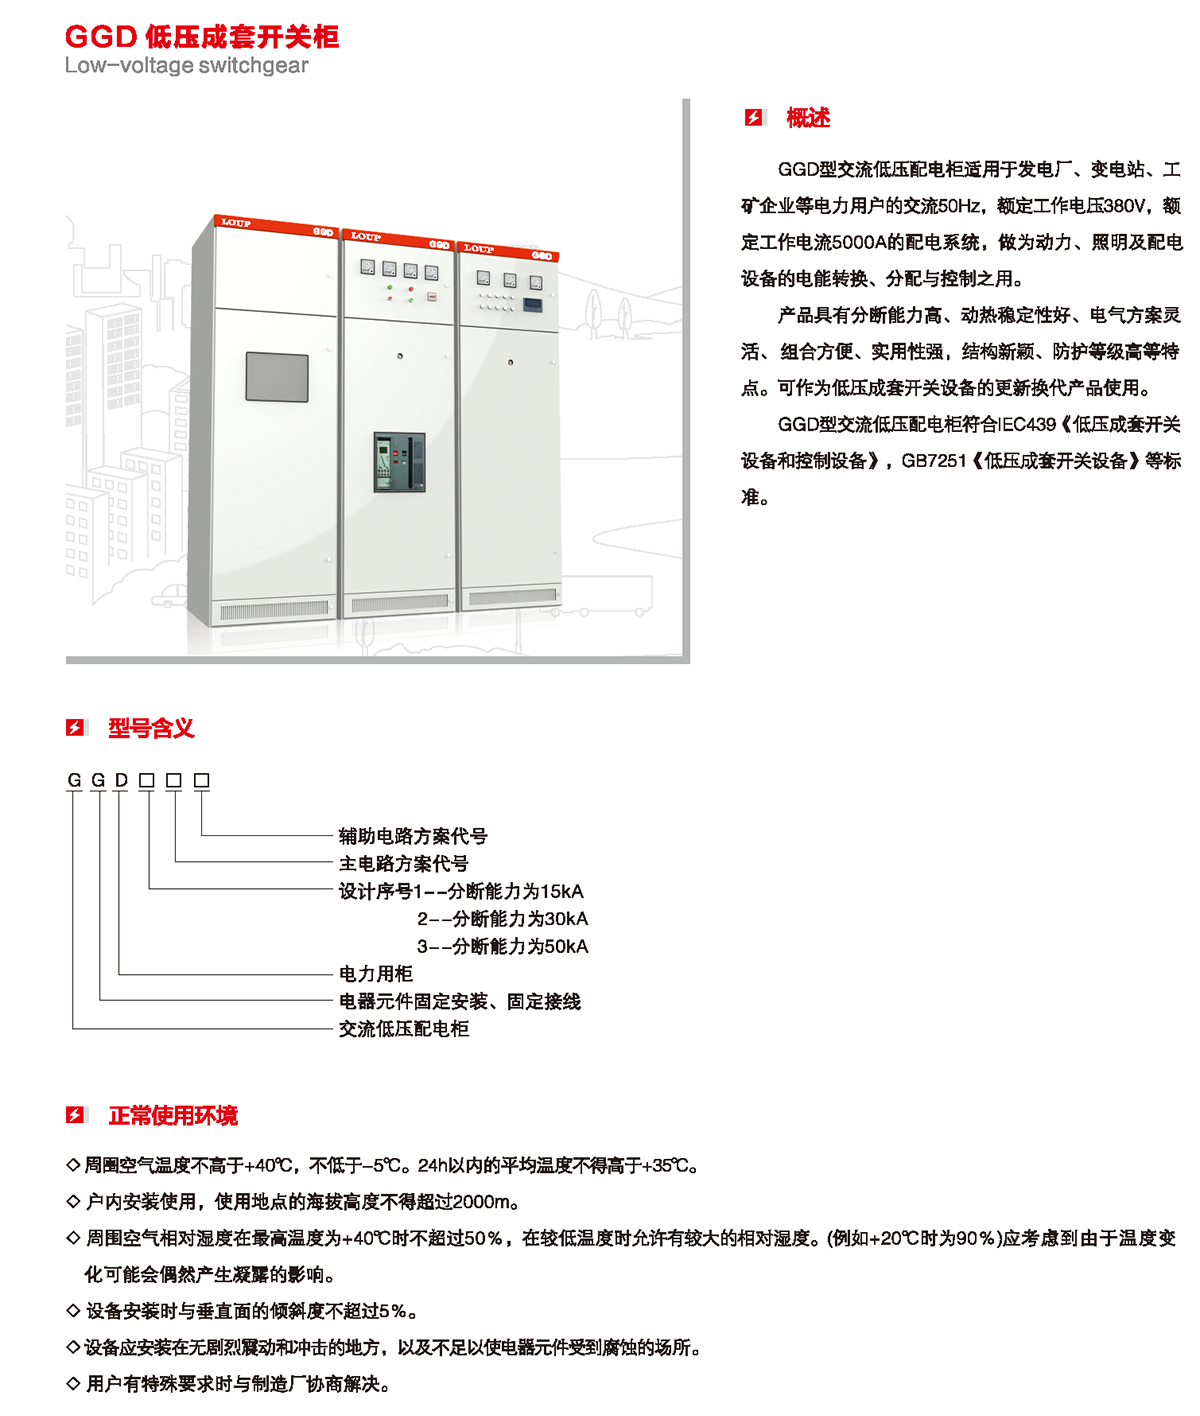 GGD低压成套开关柜概述、型号含义、正常使用环境